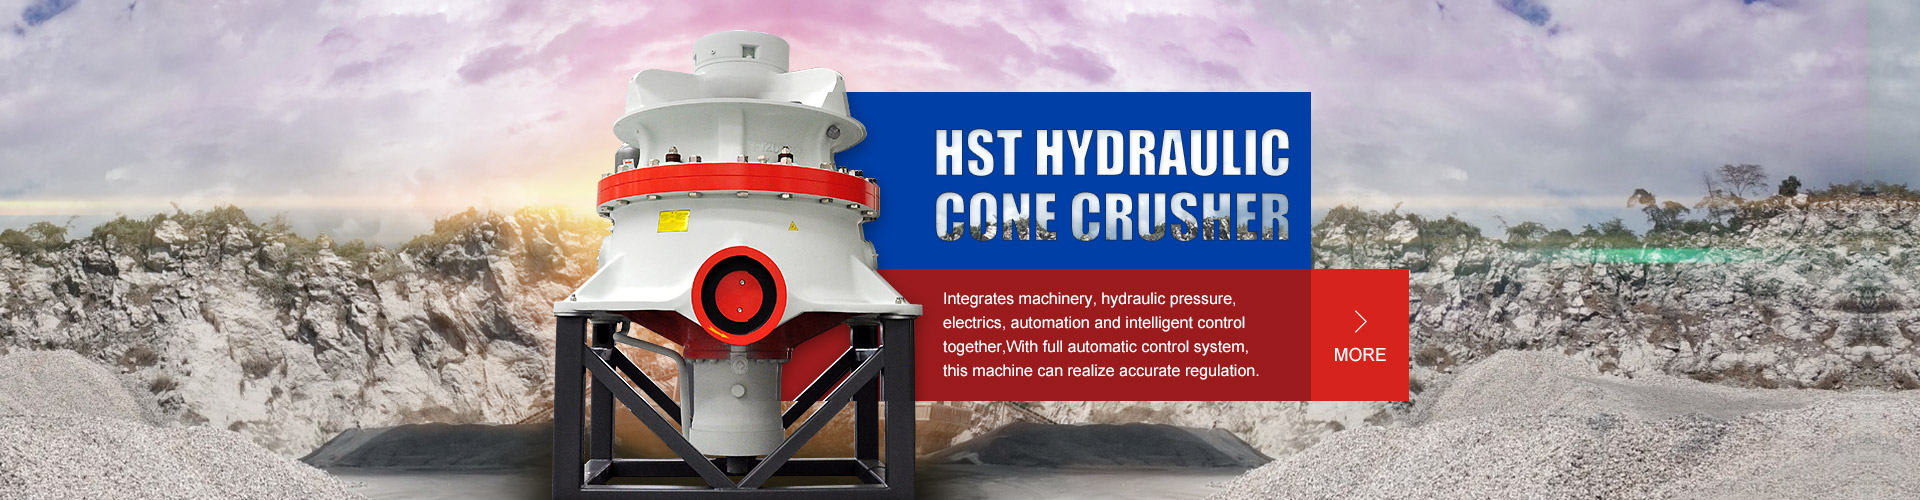 HST100 Hydraulic Cone Crusher